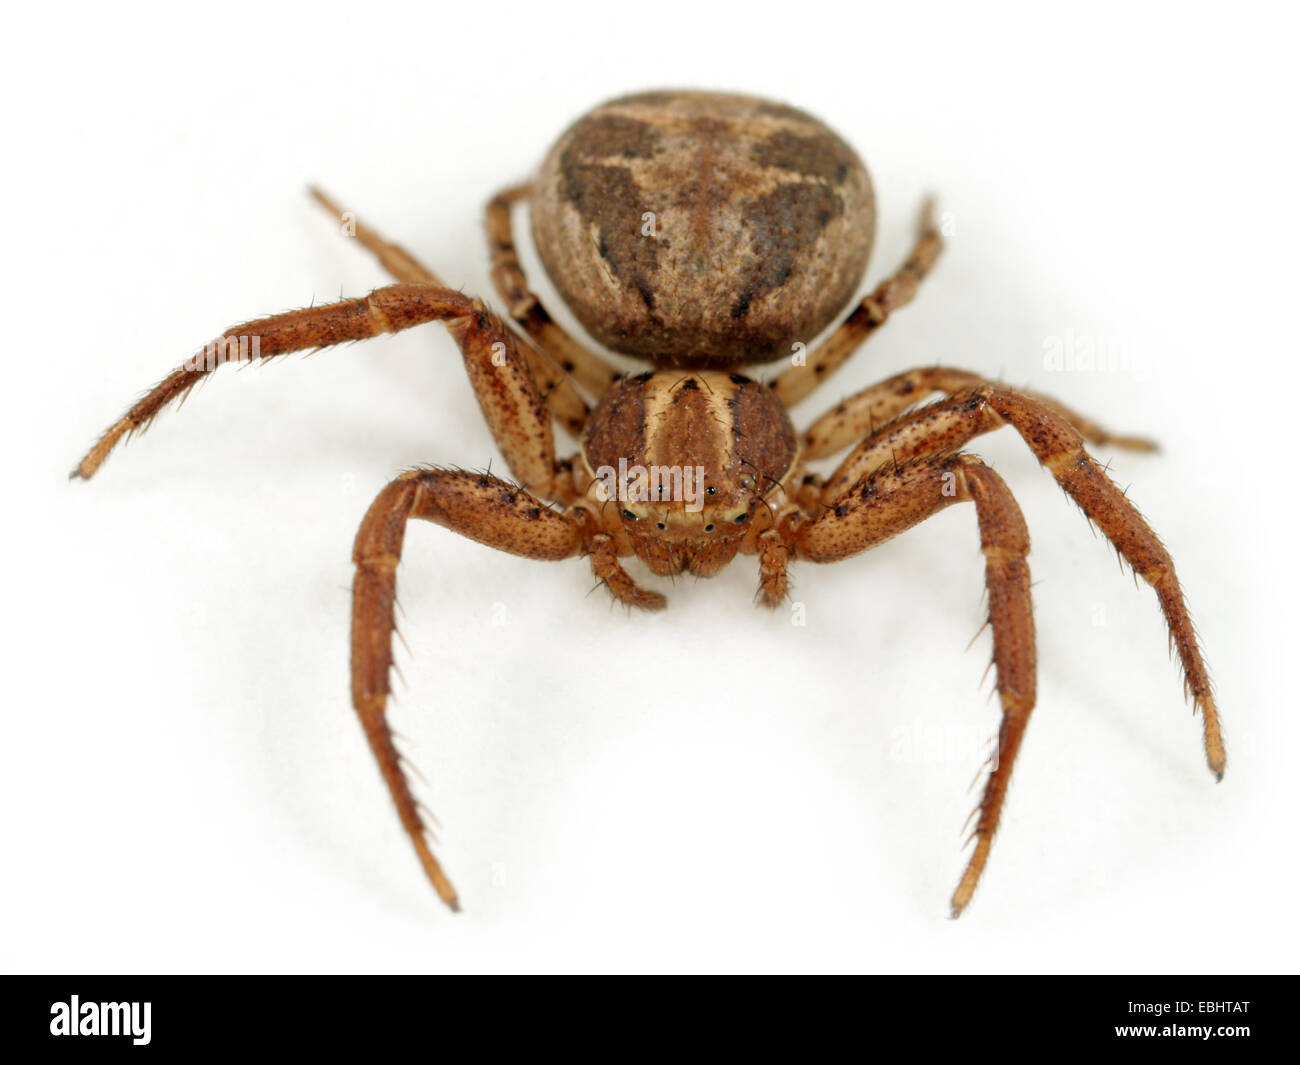 Femmina ragno granchio (Xysticus cristatus) su sfondo bianco. Ragni granchio aree parte della famiglia Thomisidae. Foto Stock